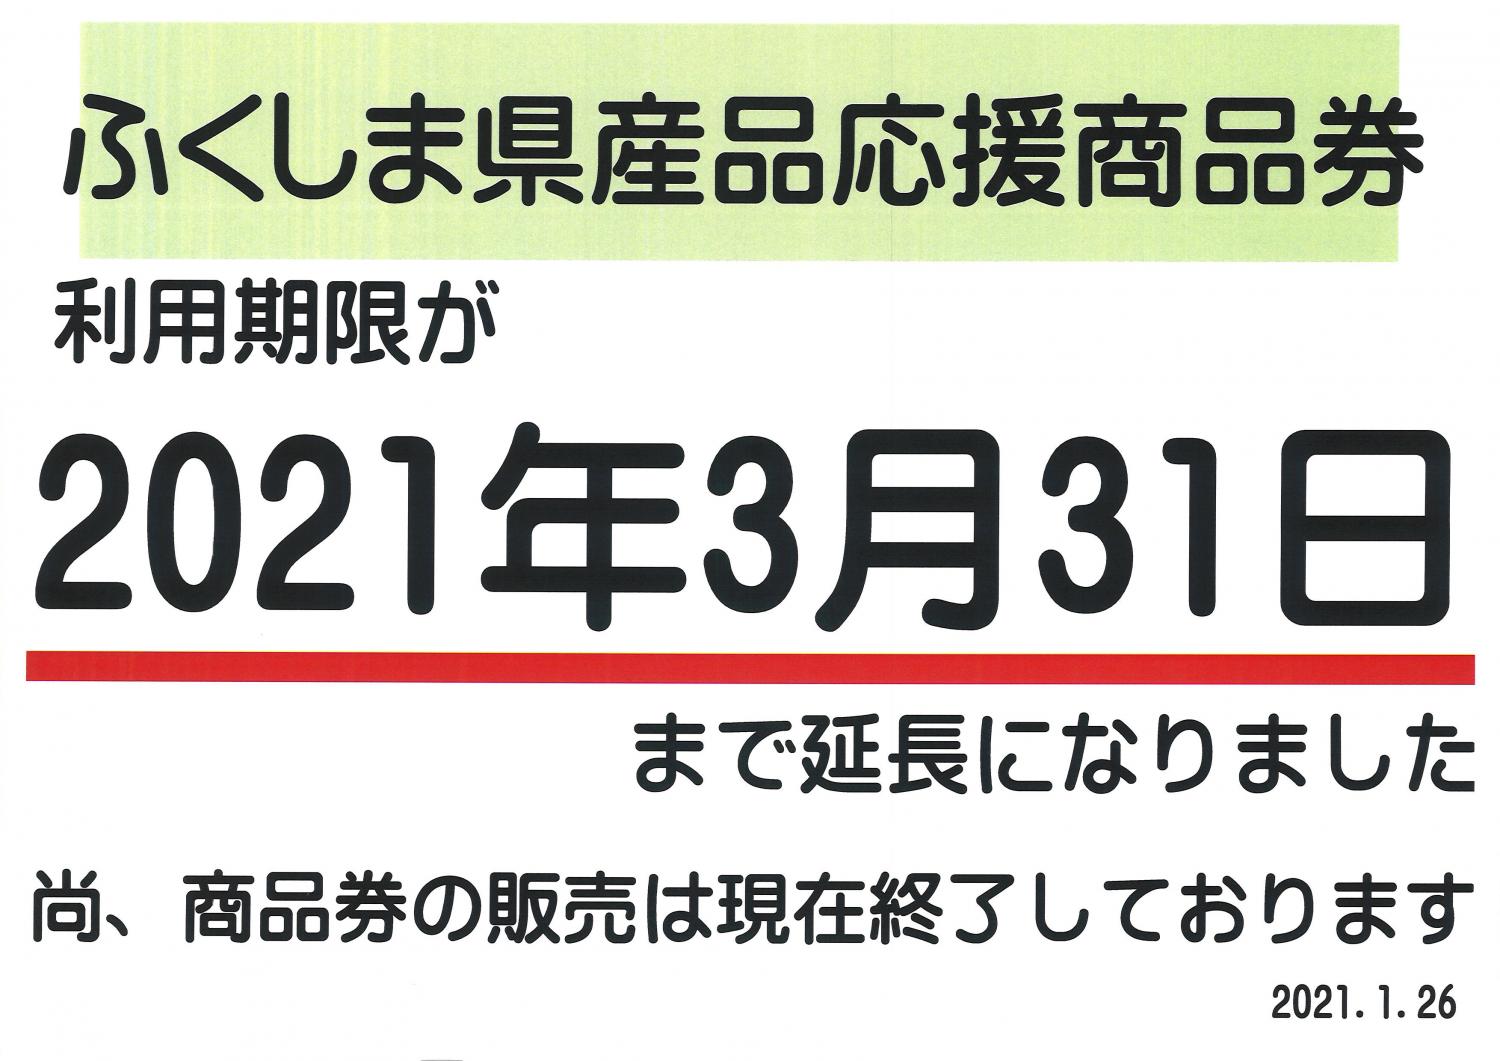 ふくしま県産品応援商品券ご利用期限のお知らせ - 日本橋ふくしま館 - MIDETTE(ミデッテ)